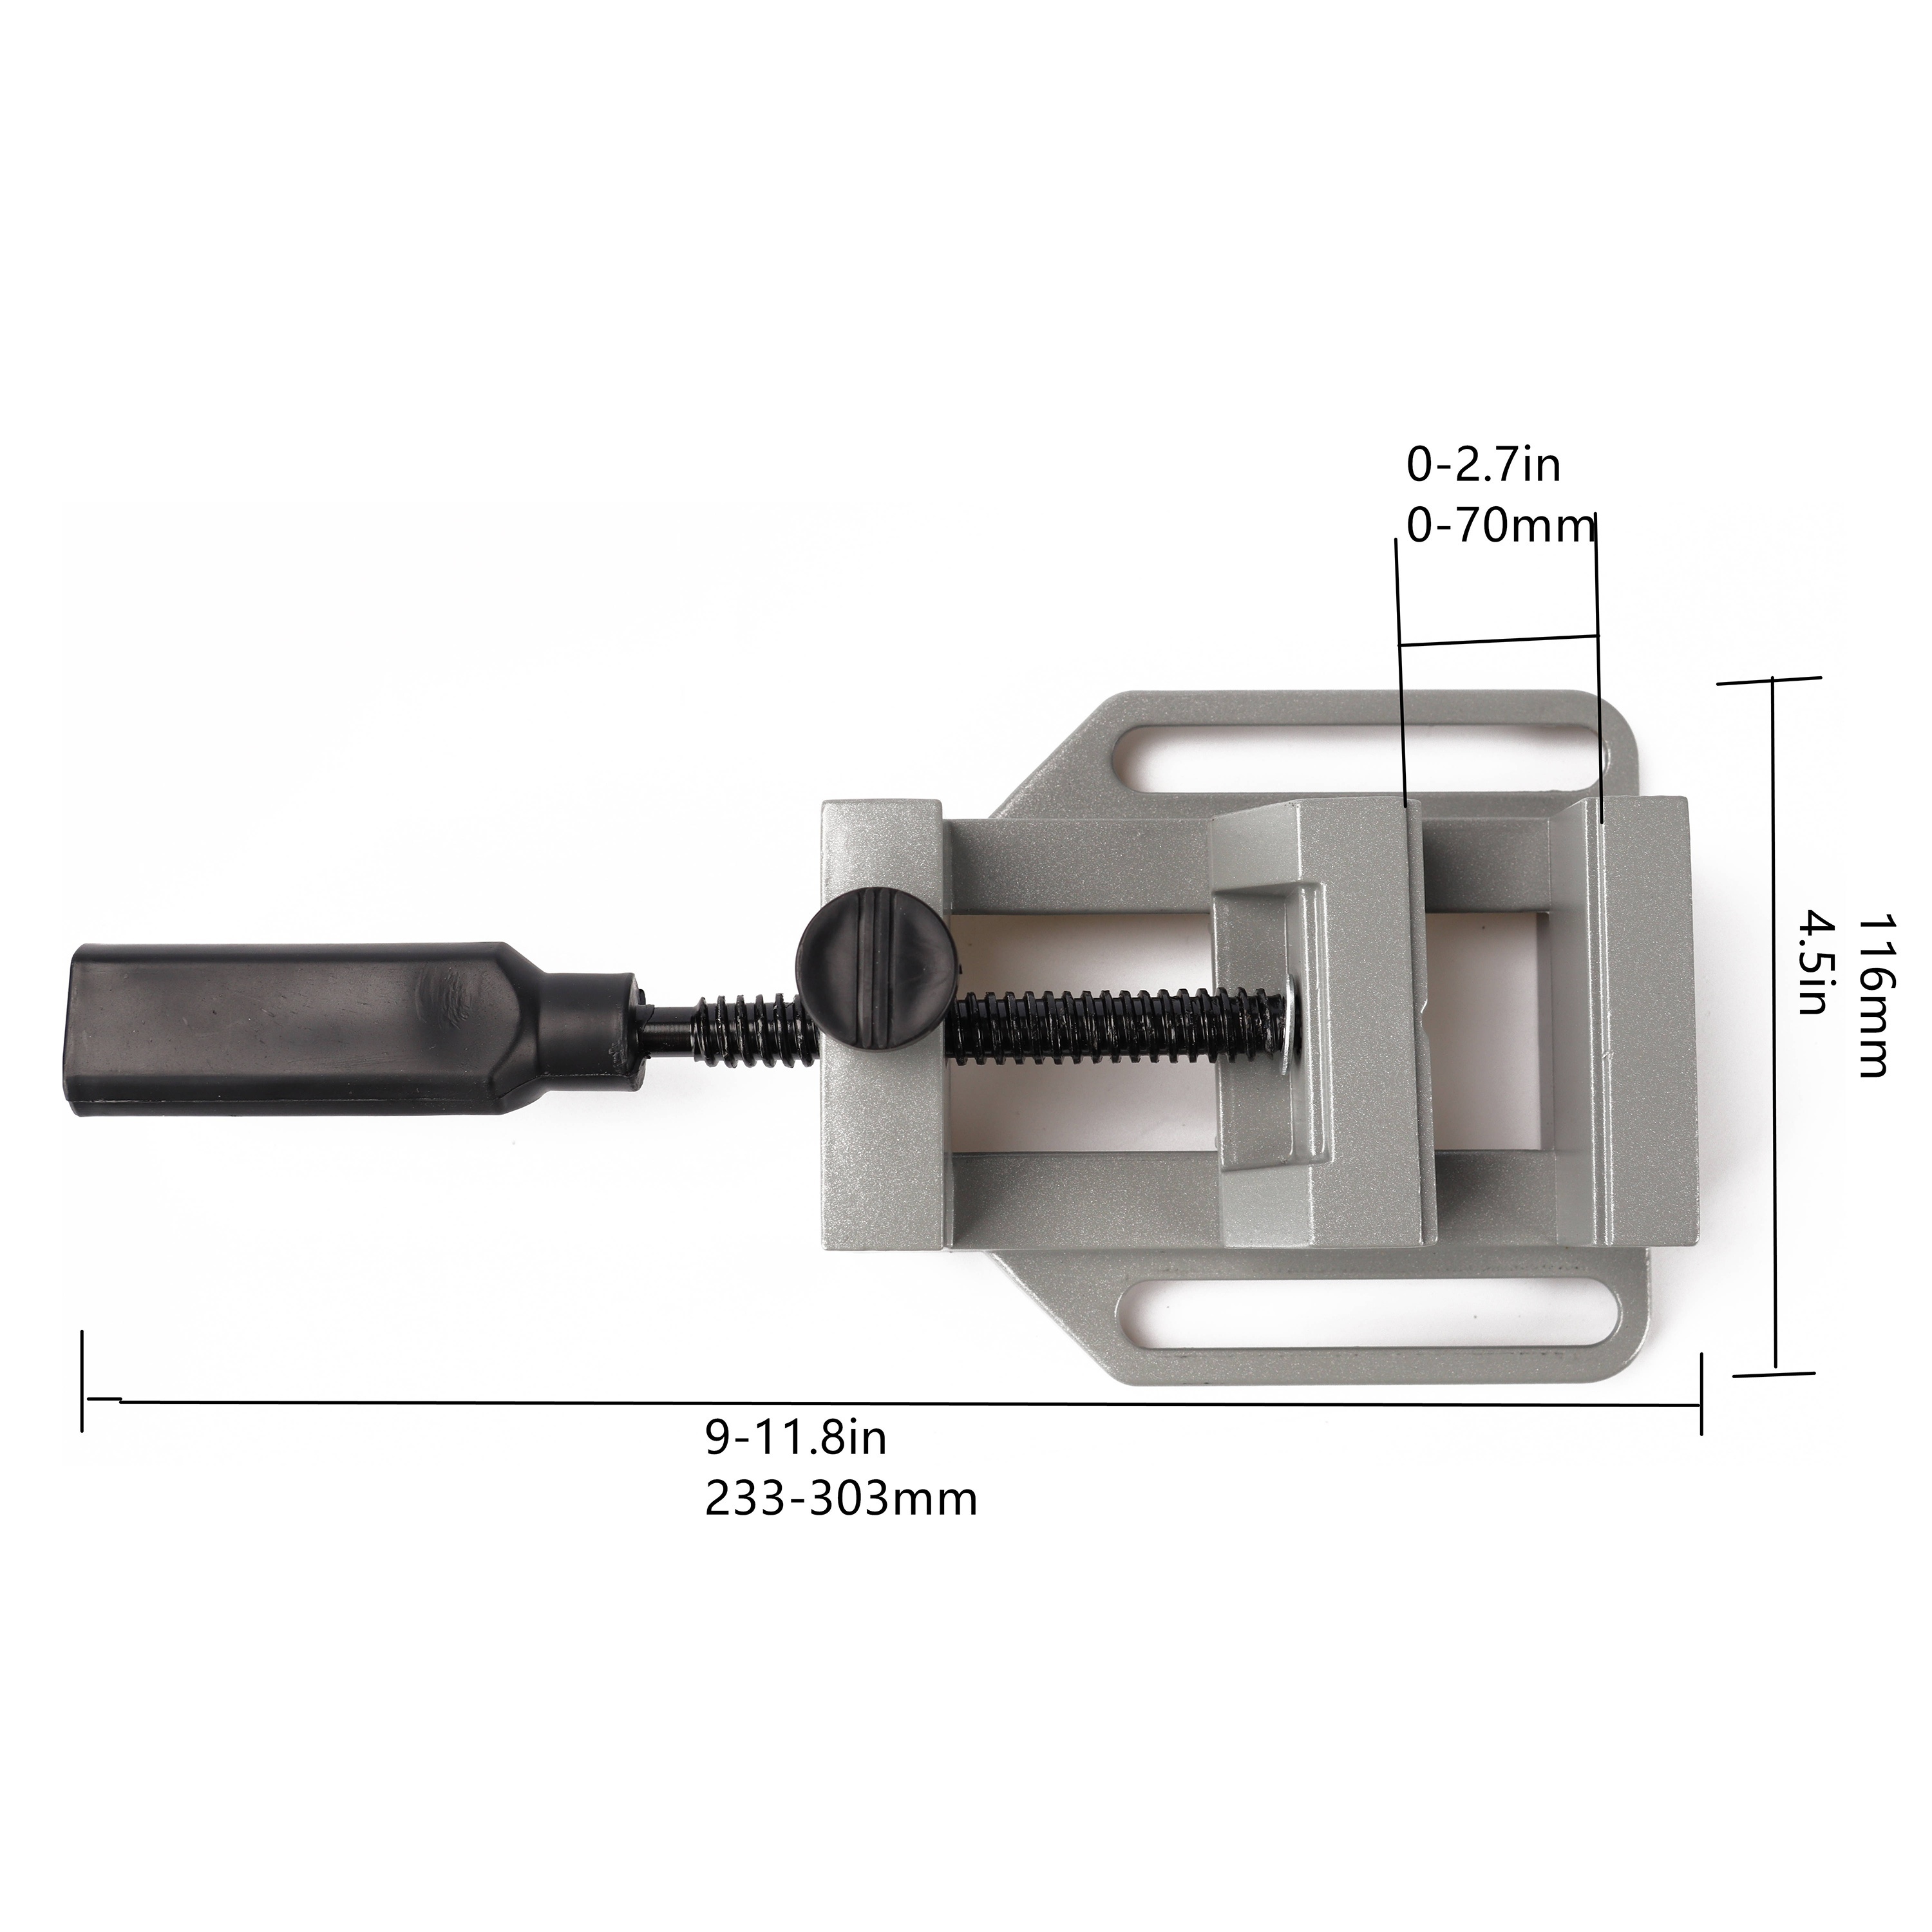  LXX Soporte de prensa de taladro para taladro de mano, soporte  de prensa de taladro con tornillo para herramienta rotativa, soporte de  mesa para hacer cualquier agujero vertical con alta precisión 